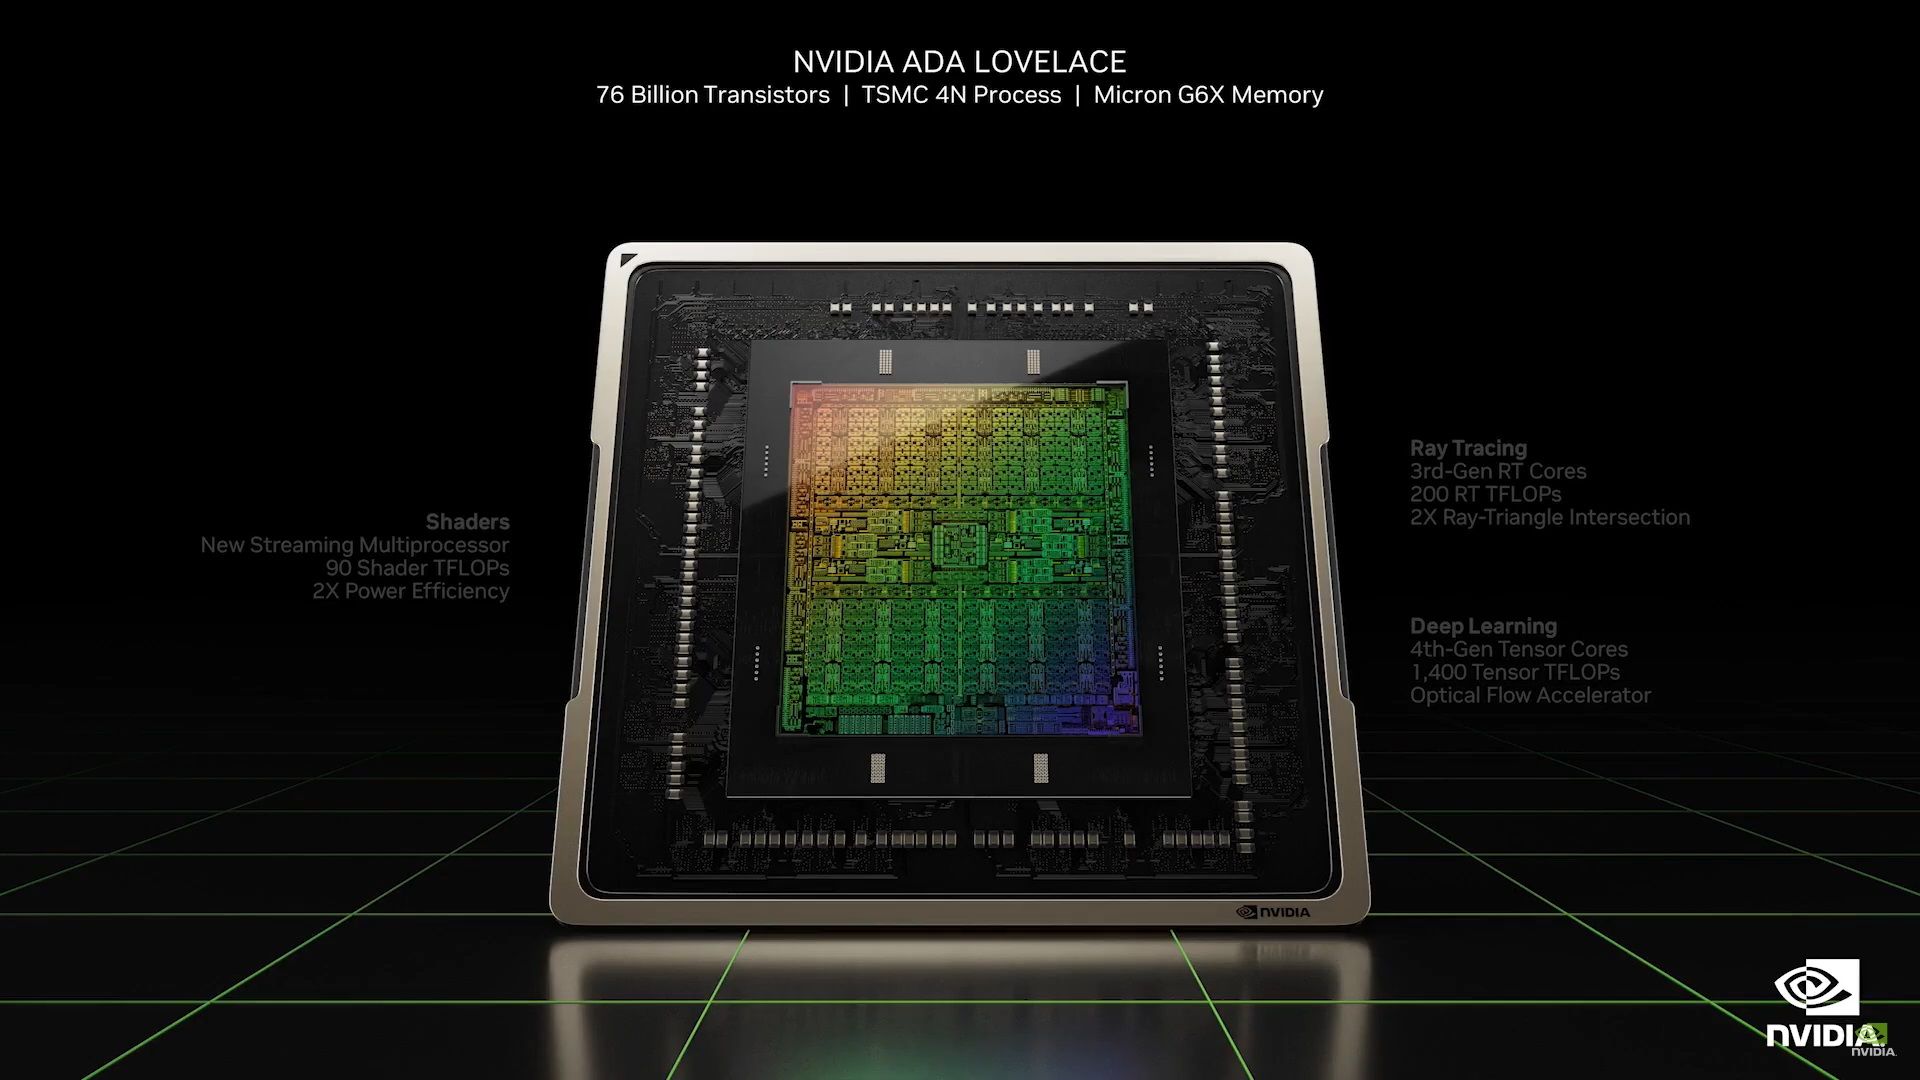 nvidia new ada lovelace architecture image